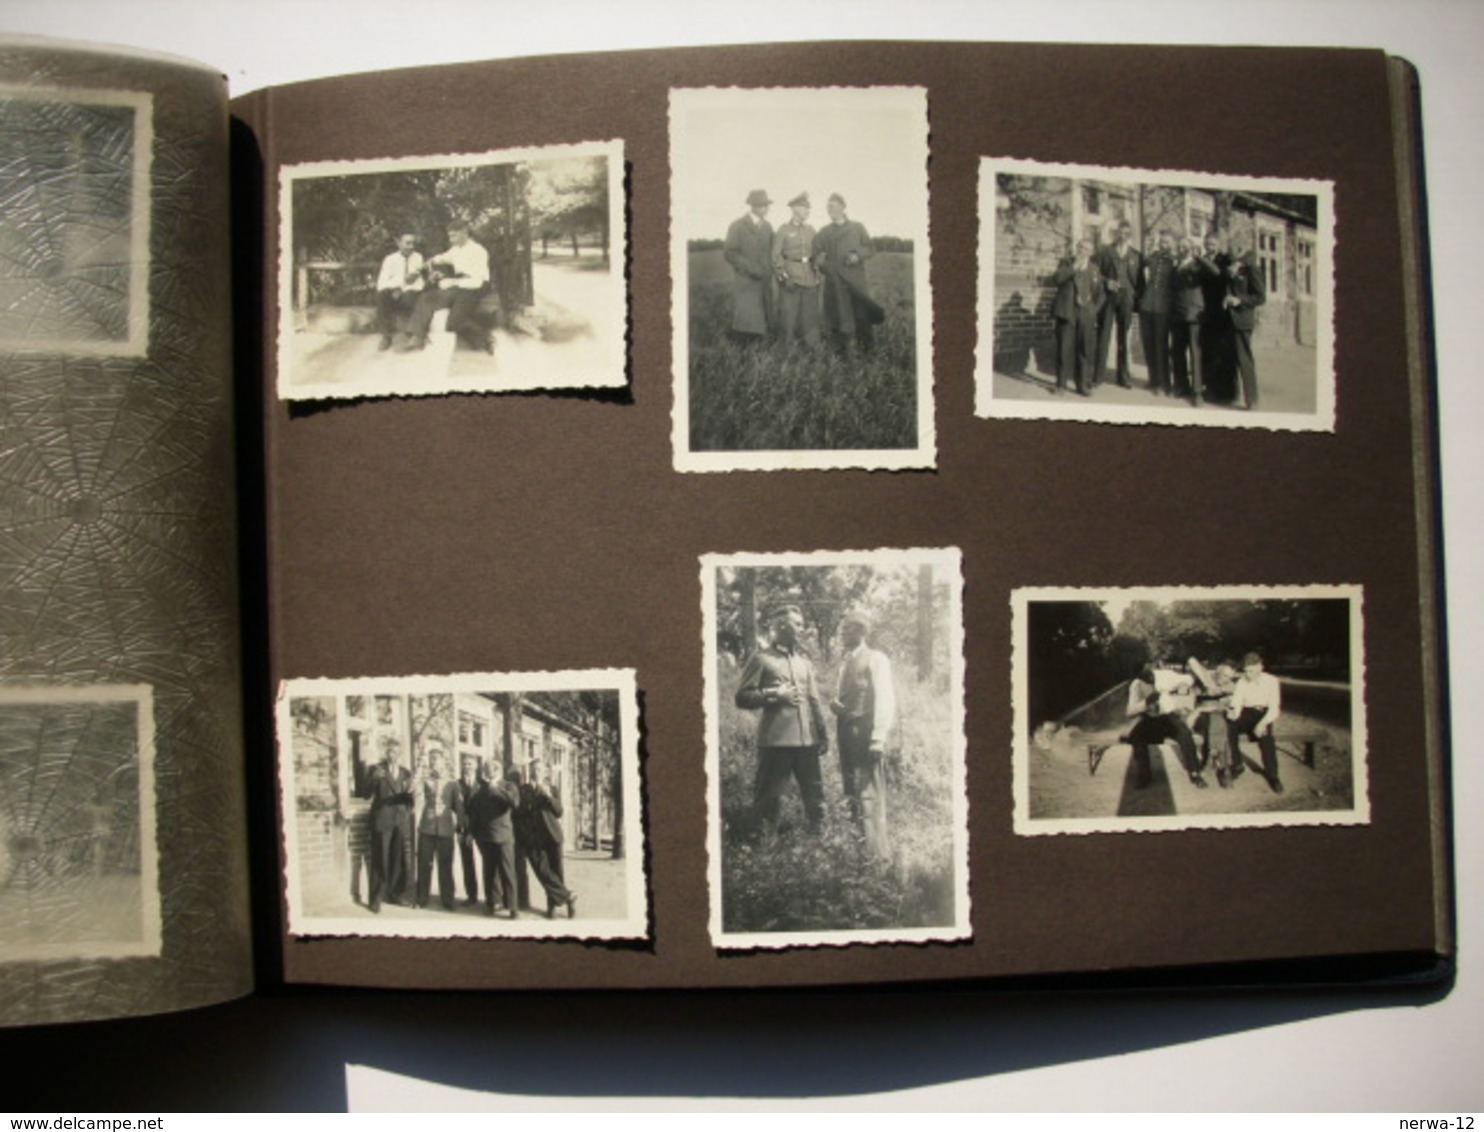 Militaria 2. Weltkrieg Fotoalbum eines Unteroffiziers aus der Zeit 1939-45. Gefallen am 30 März 1945 in Gothafen.